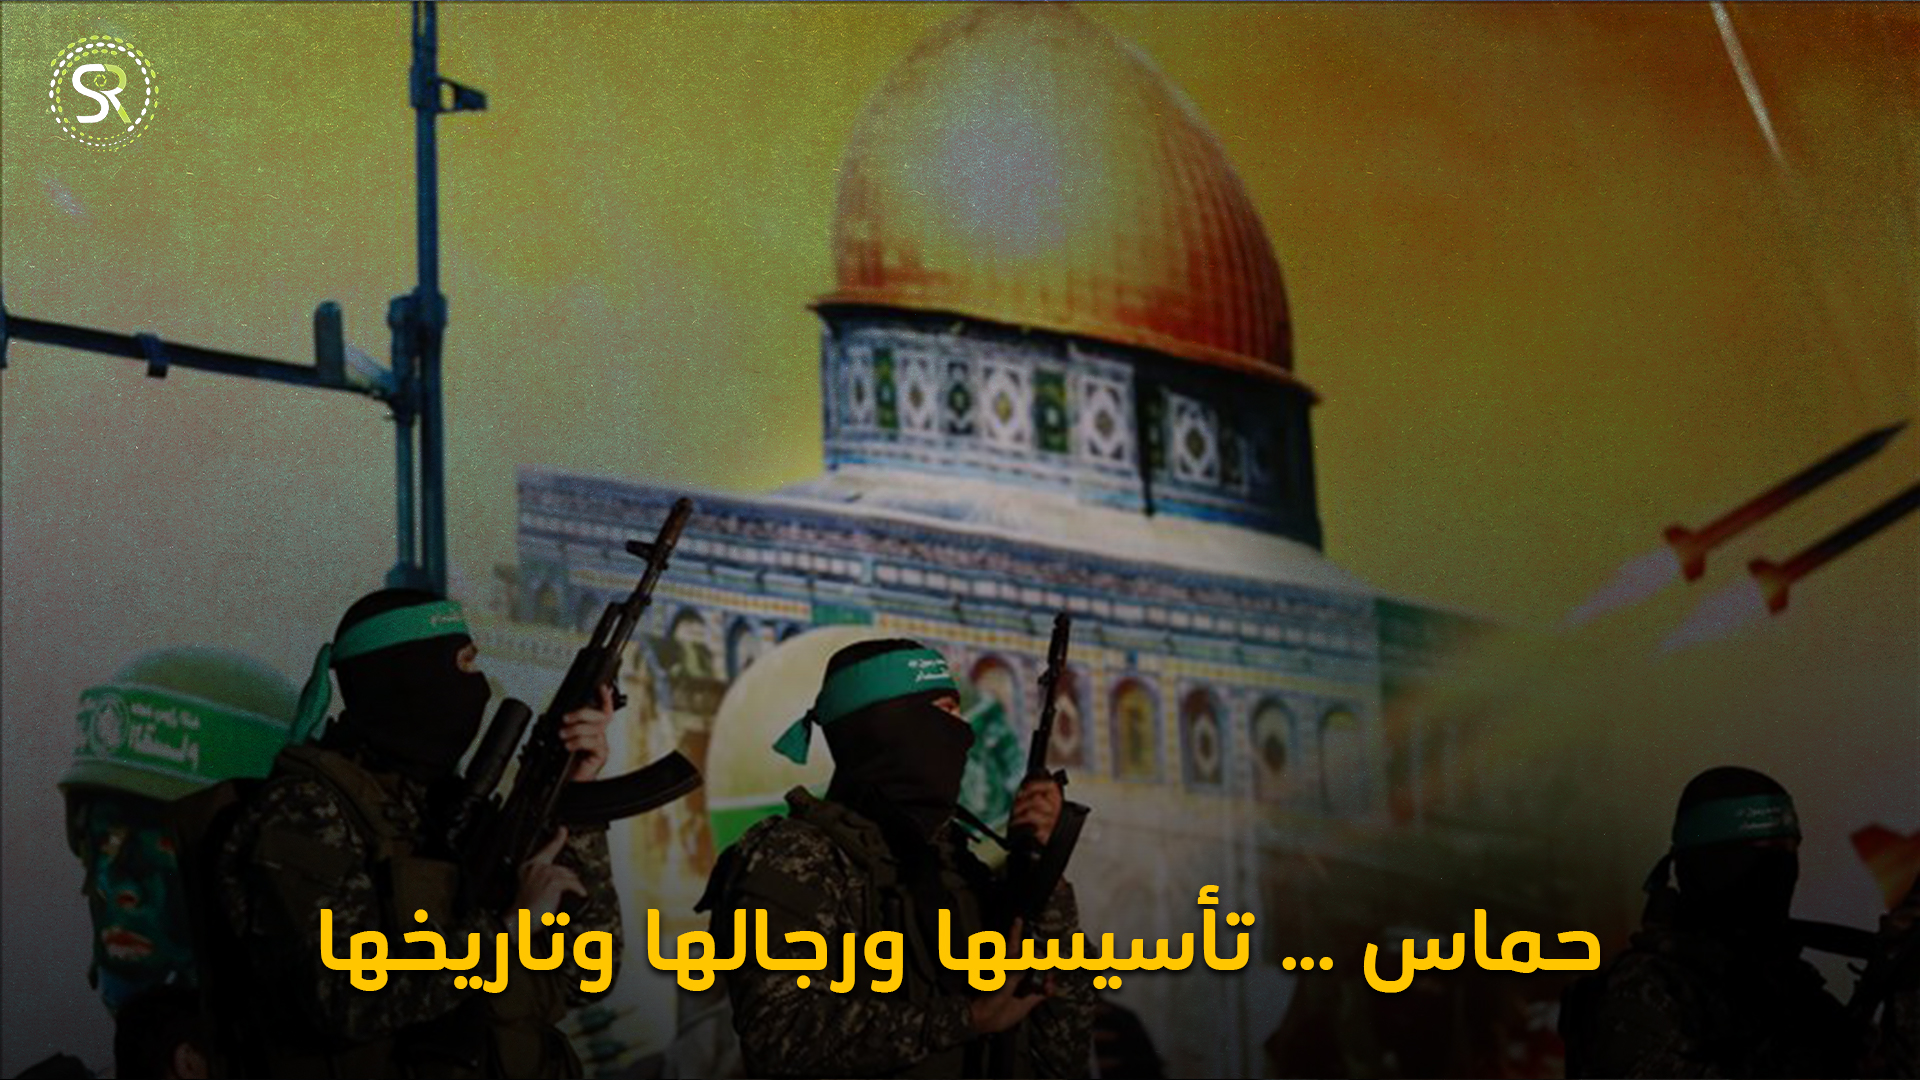 تأسيس حركة حماس، وعلاقتها بالإخوان، وأبرز قادتها.